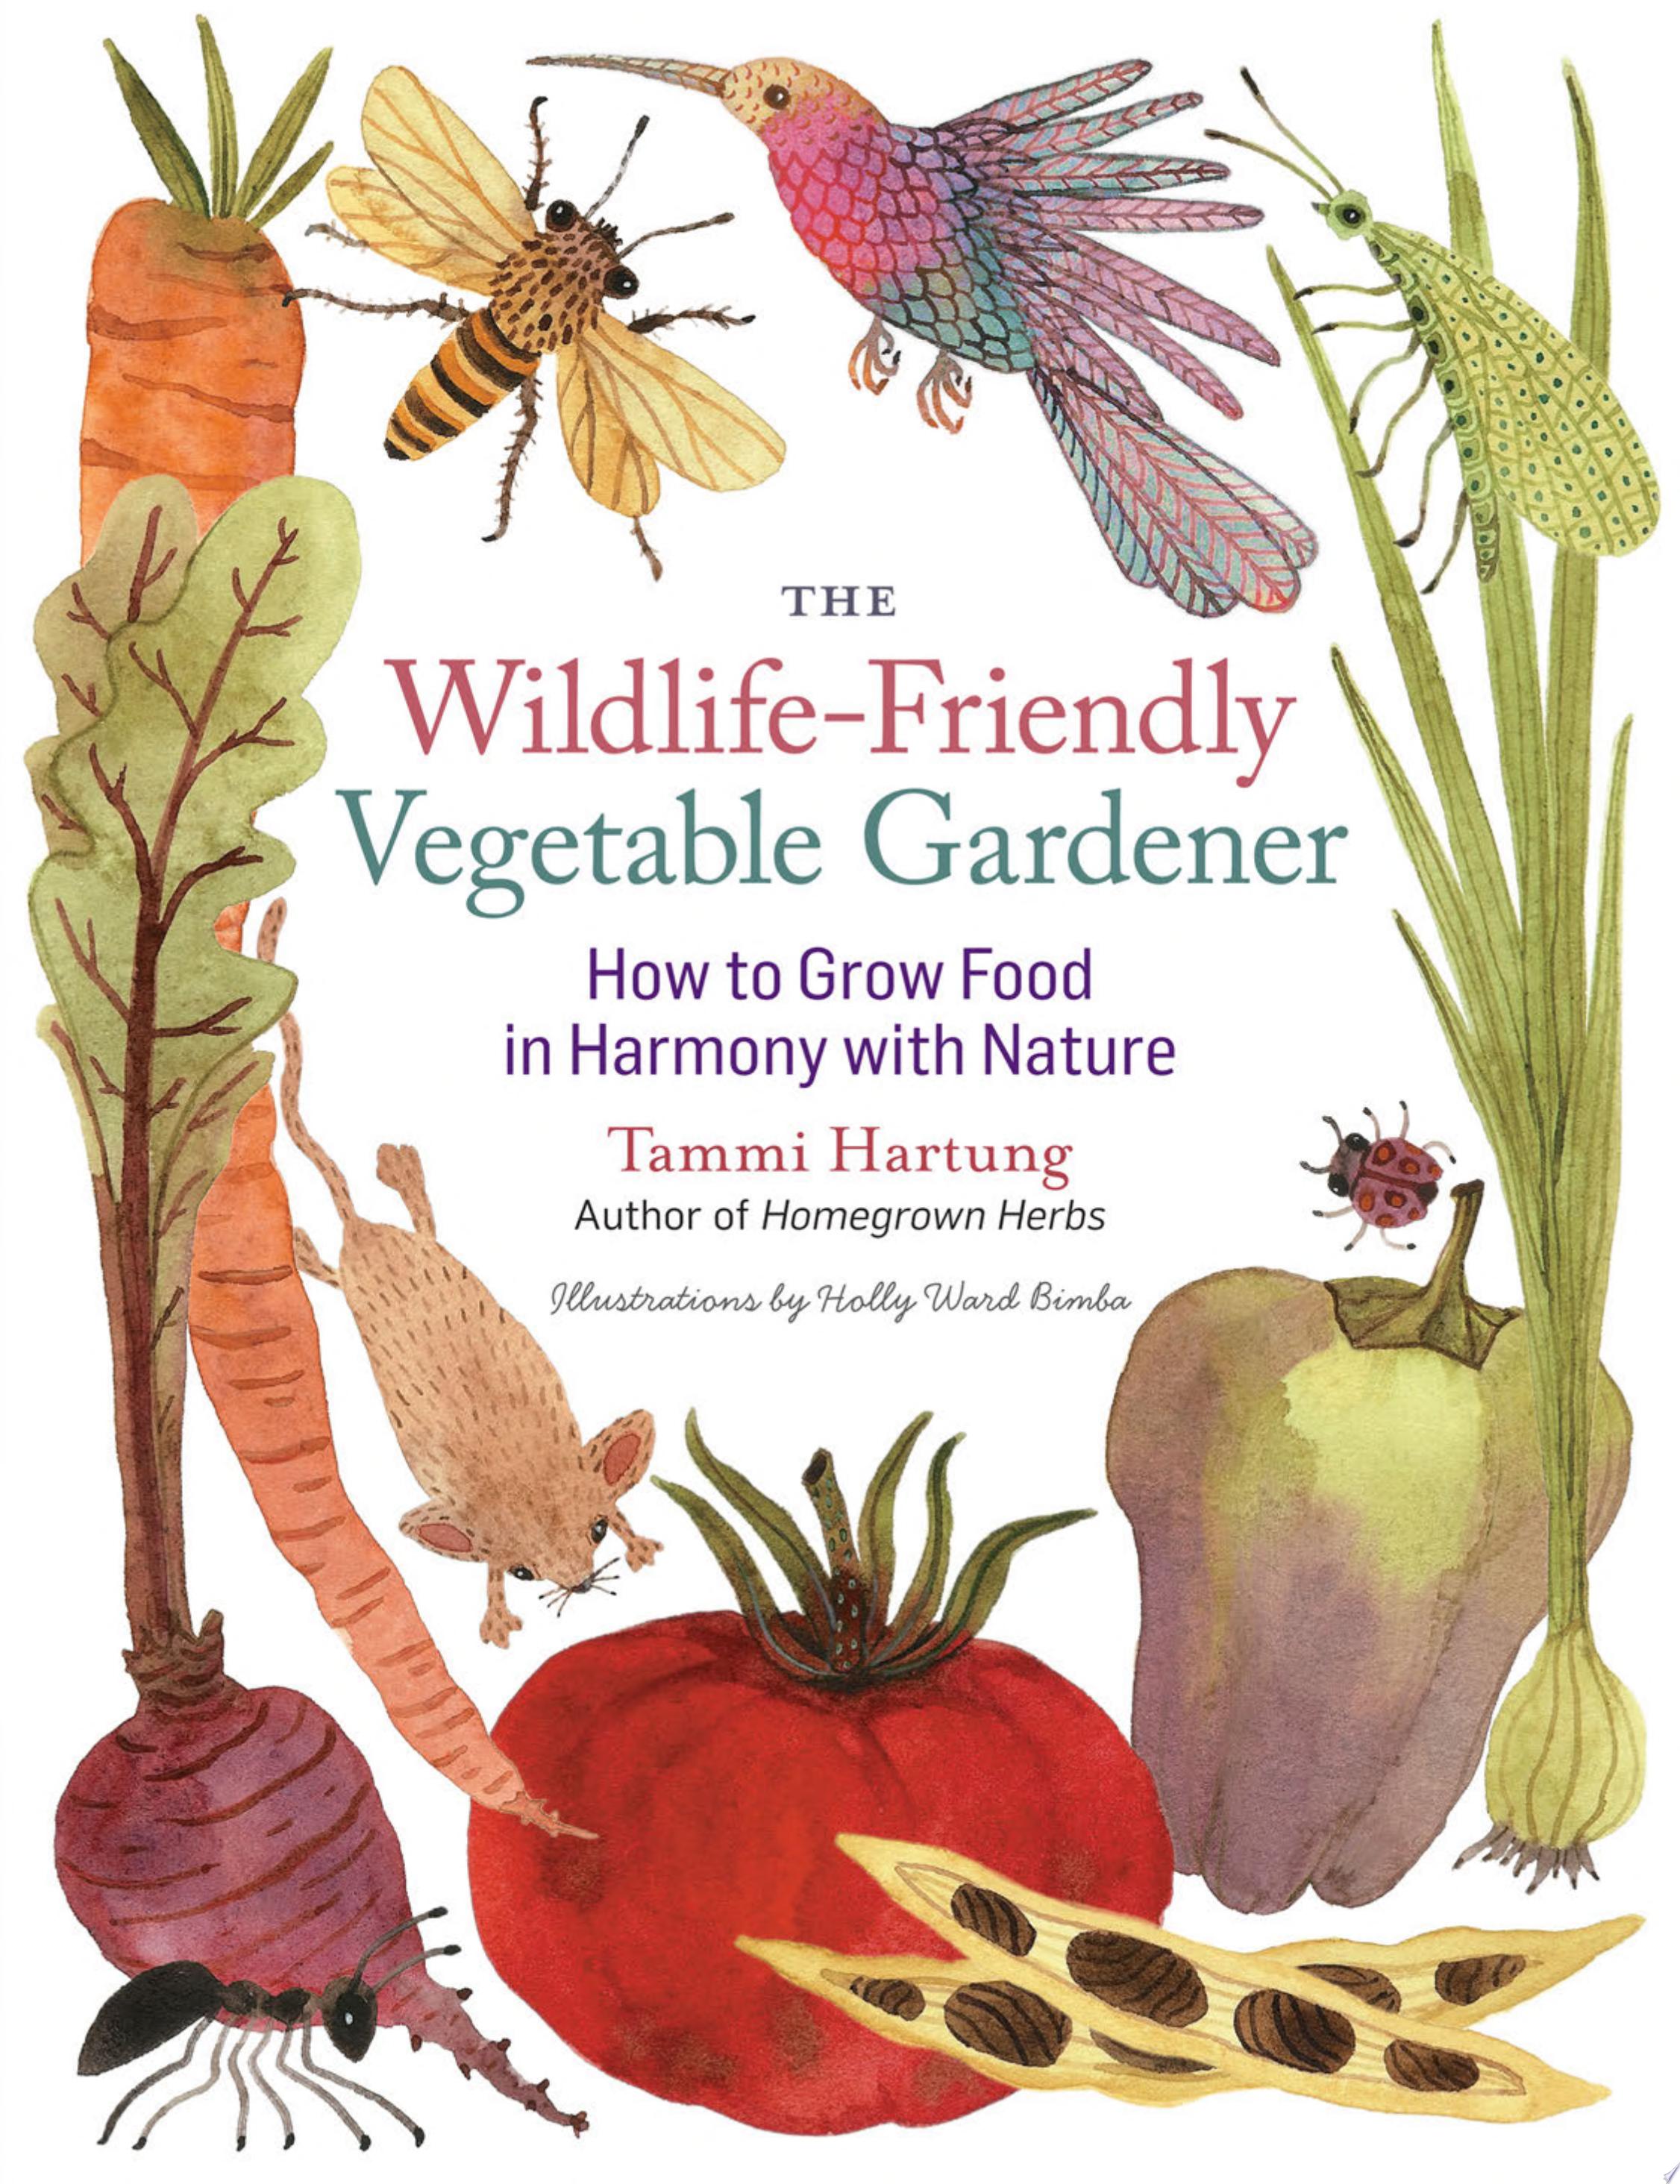 Image for "The Wildlife-Friendly Vegetable Gardener"